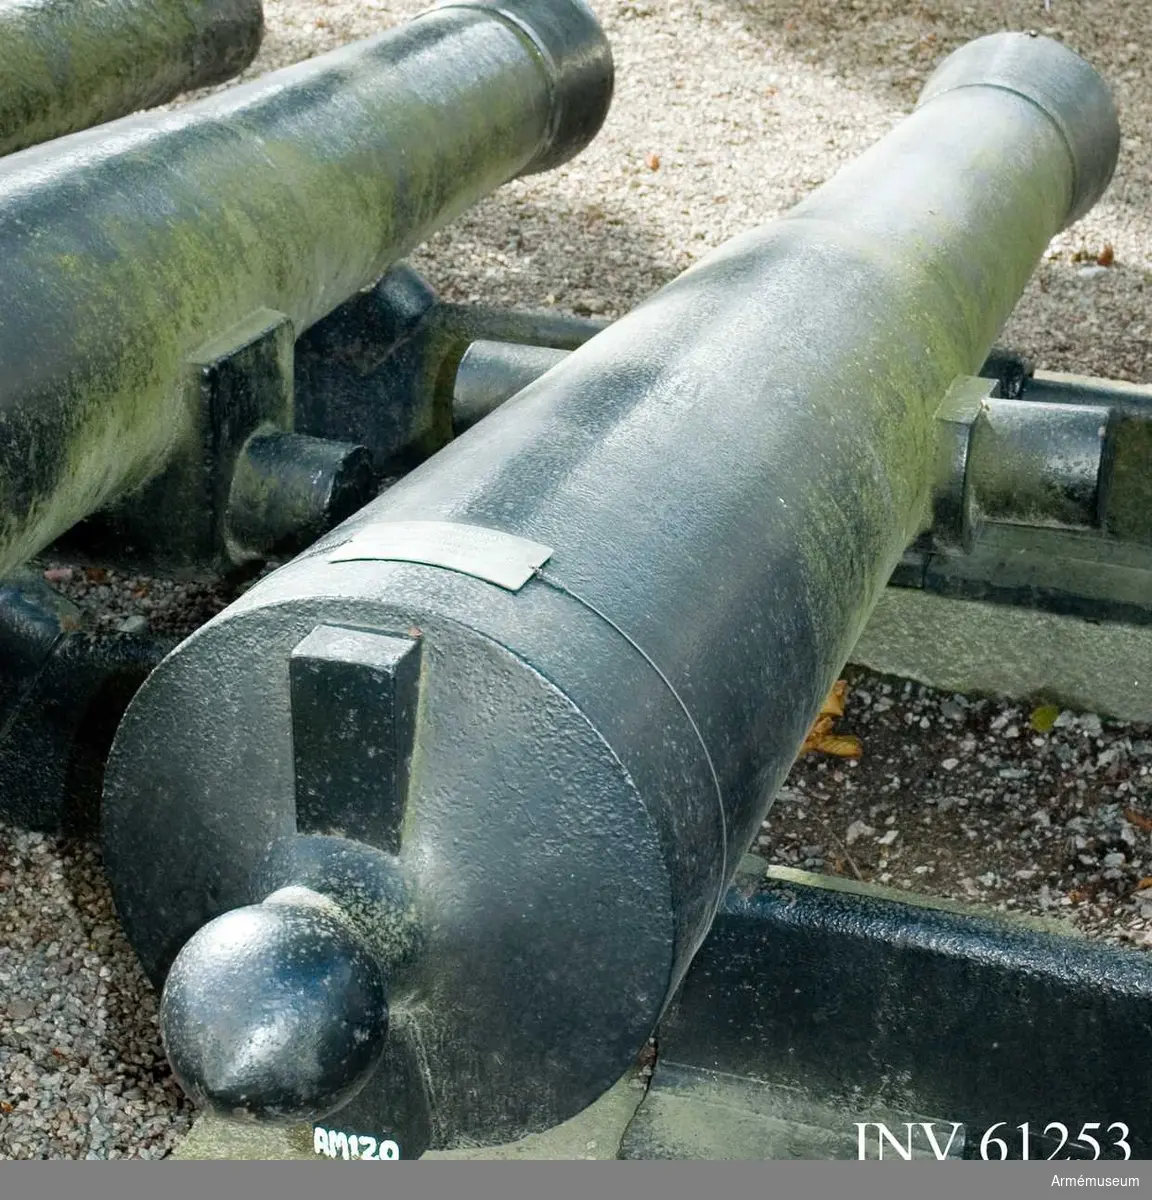 Grupp F I. 
Mynningen, från början cylindriskt utborrad, förändrades efter första provskjutningen i likhet med de Helvigska kanonerna till s.k. trumpetmynning, varefter provskjutning ånyo företogs. Vänster tapp märkt 1822, höger tapp VB.